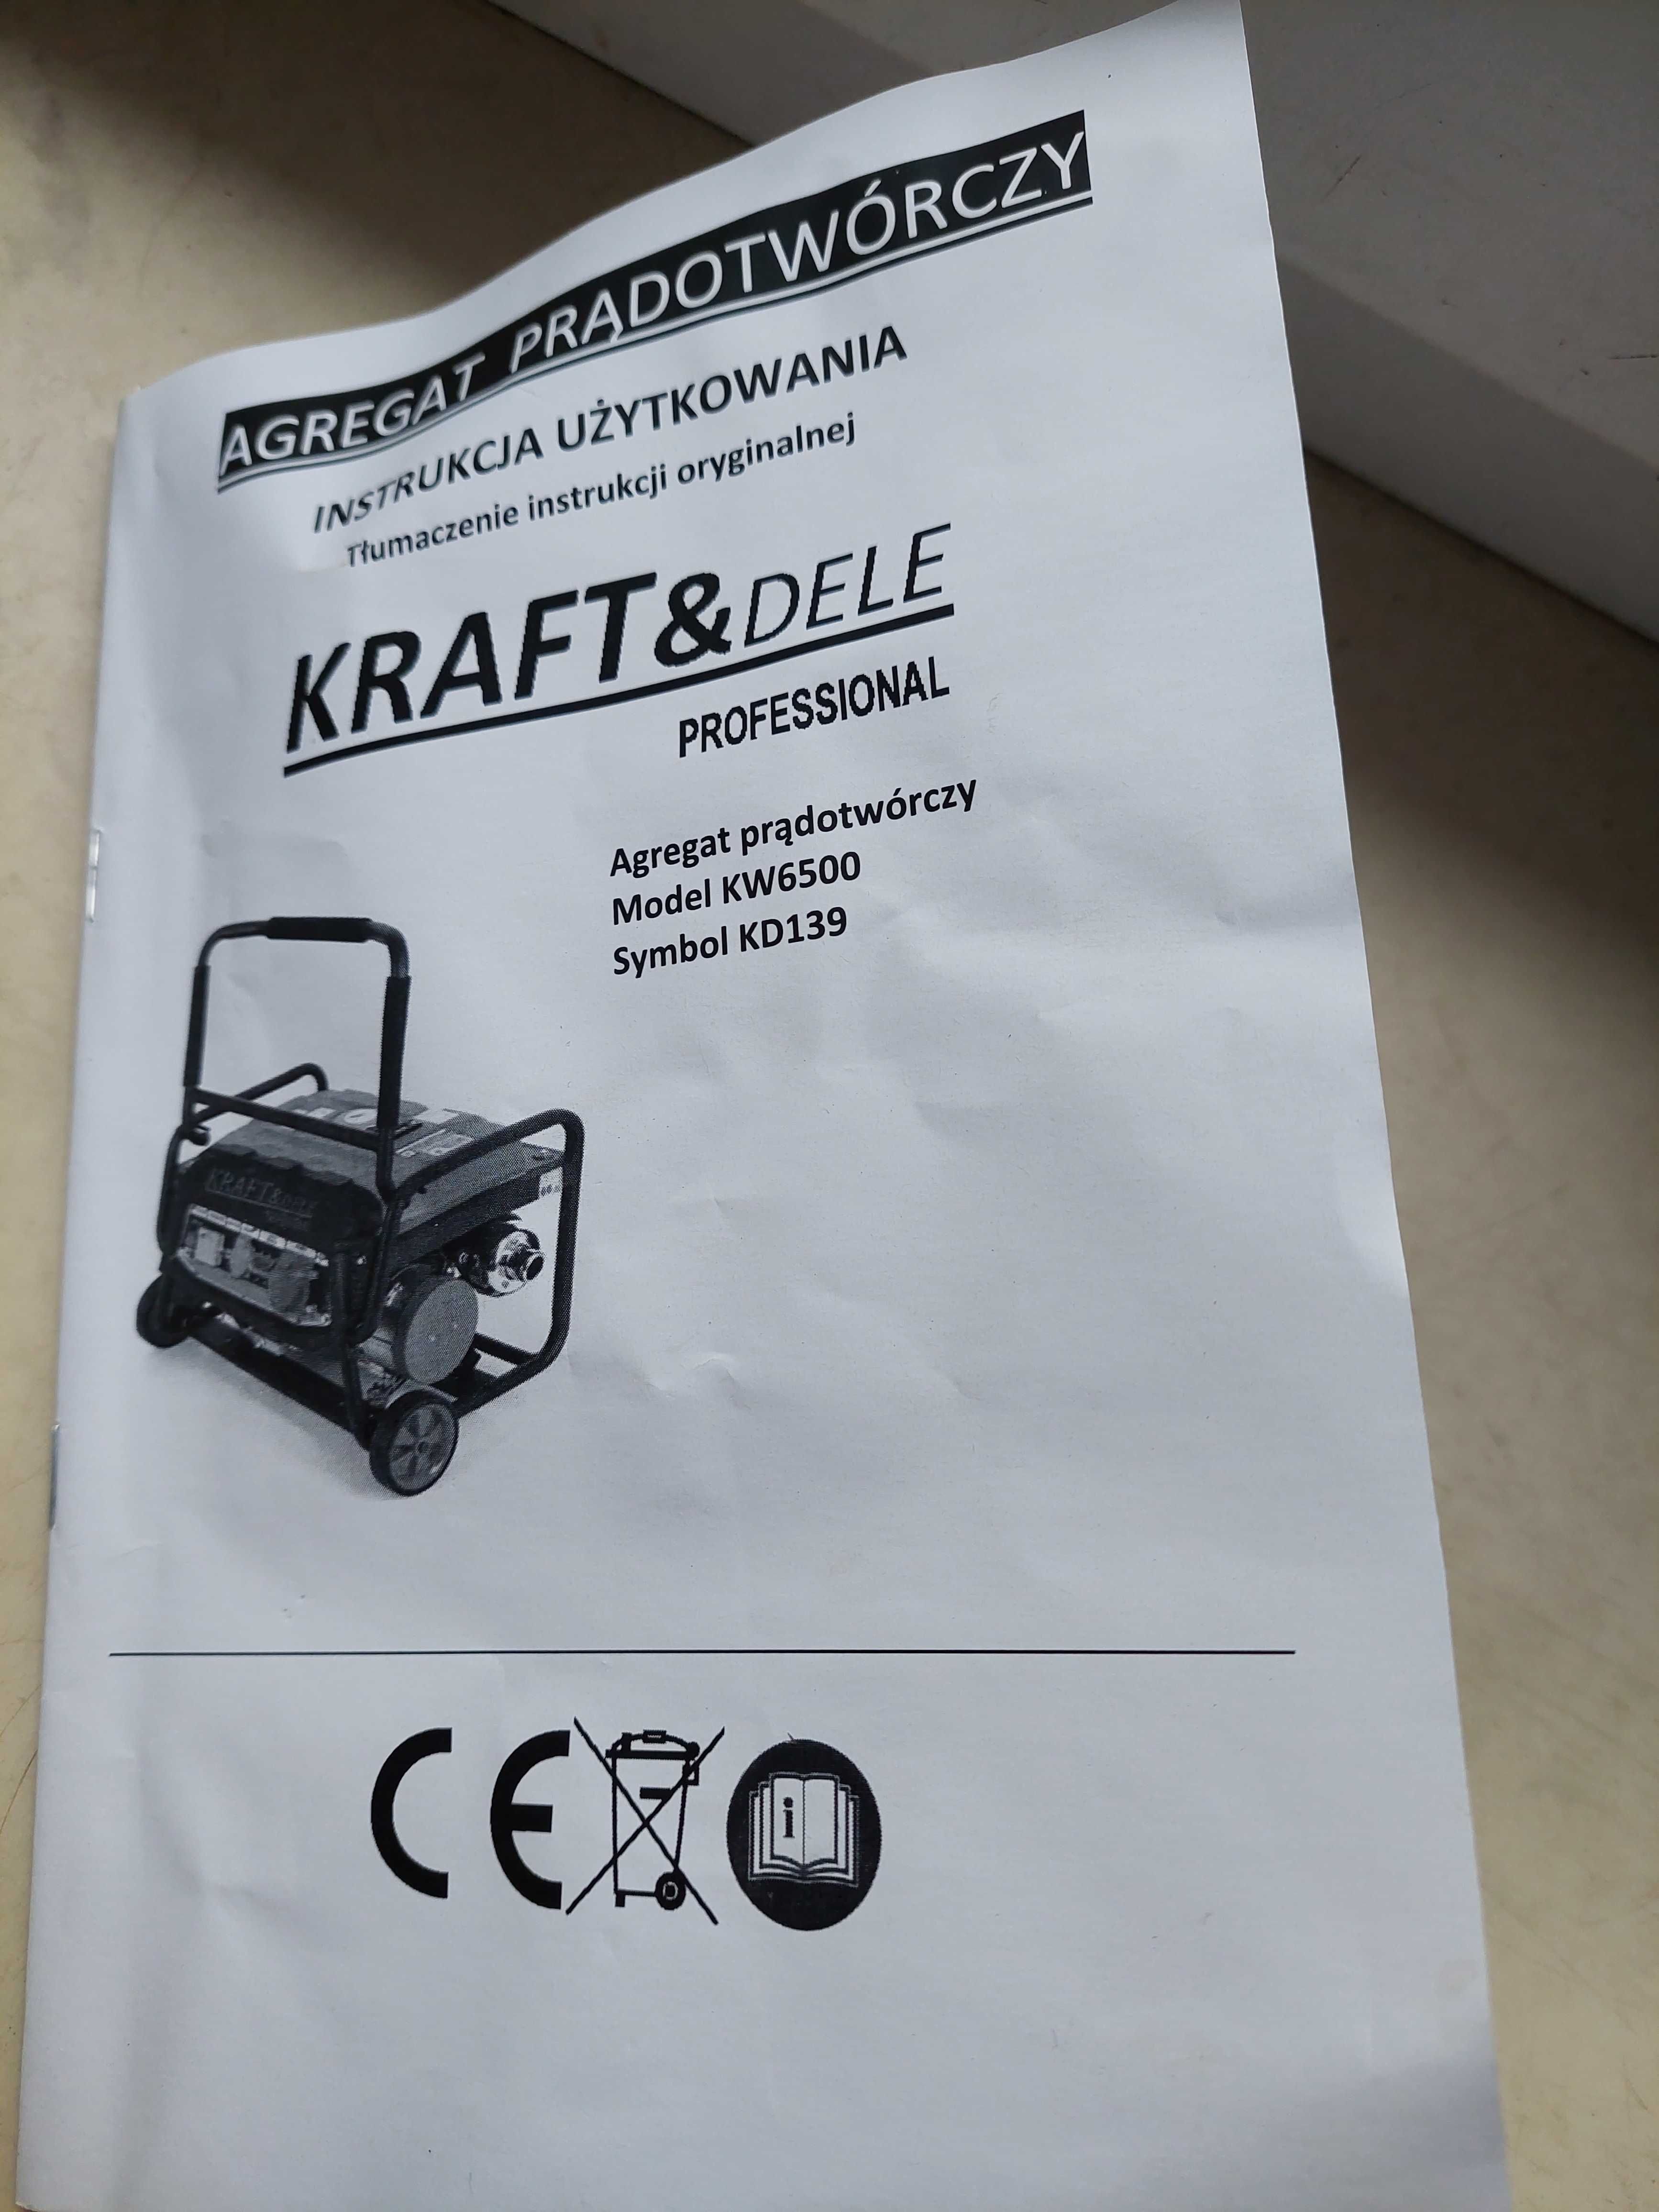 Agregat prądotwórczy Kraft&Dele Profesional 3000 W -  3 fazowy